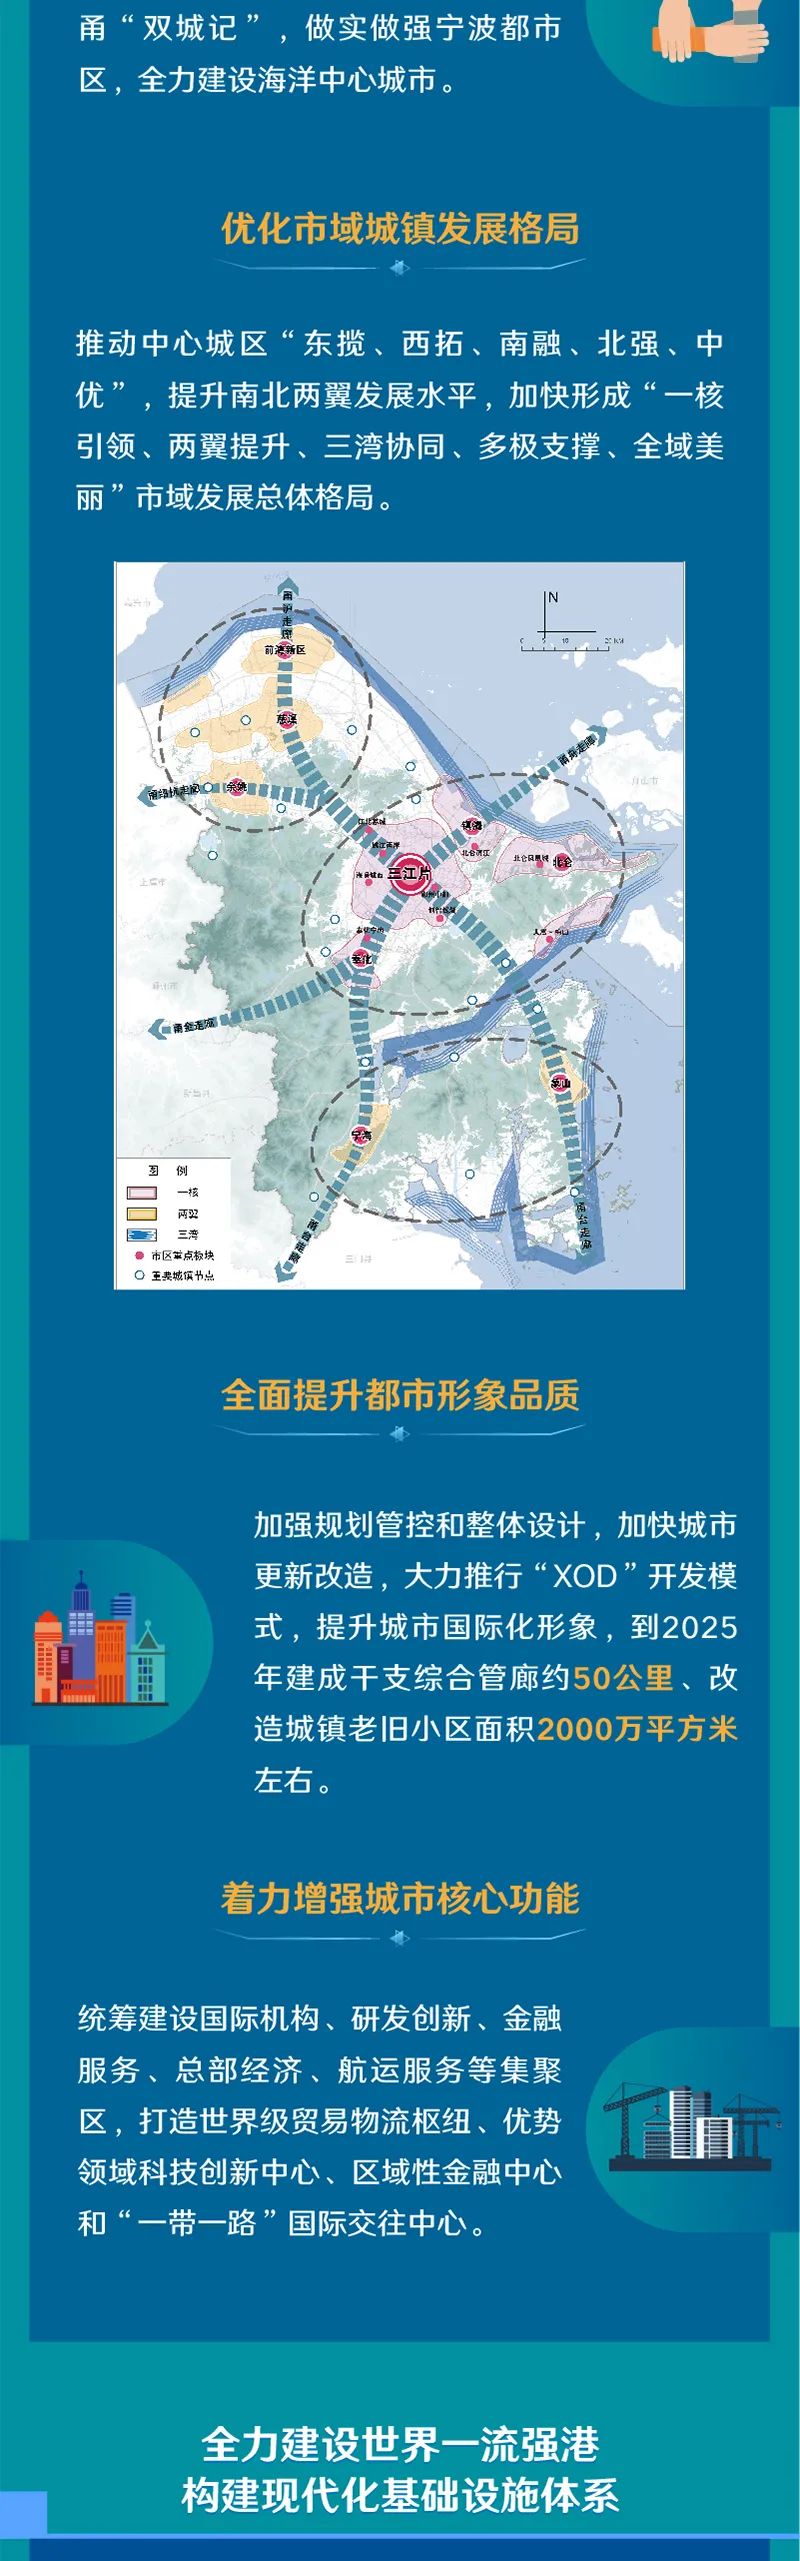 十四五 | 宁波市"十四五"规划和2035年远景目标蓝图